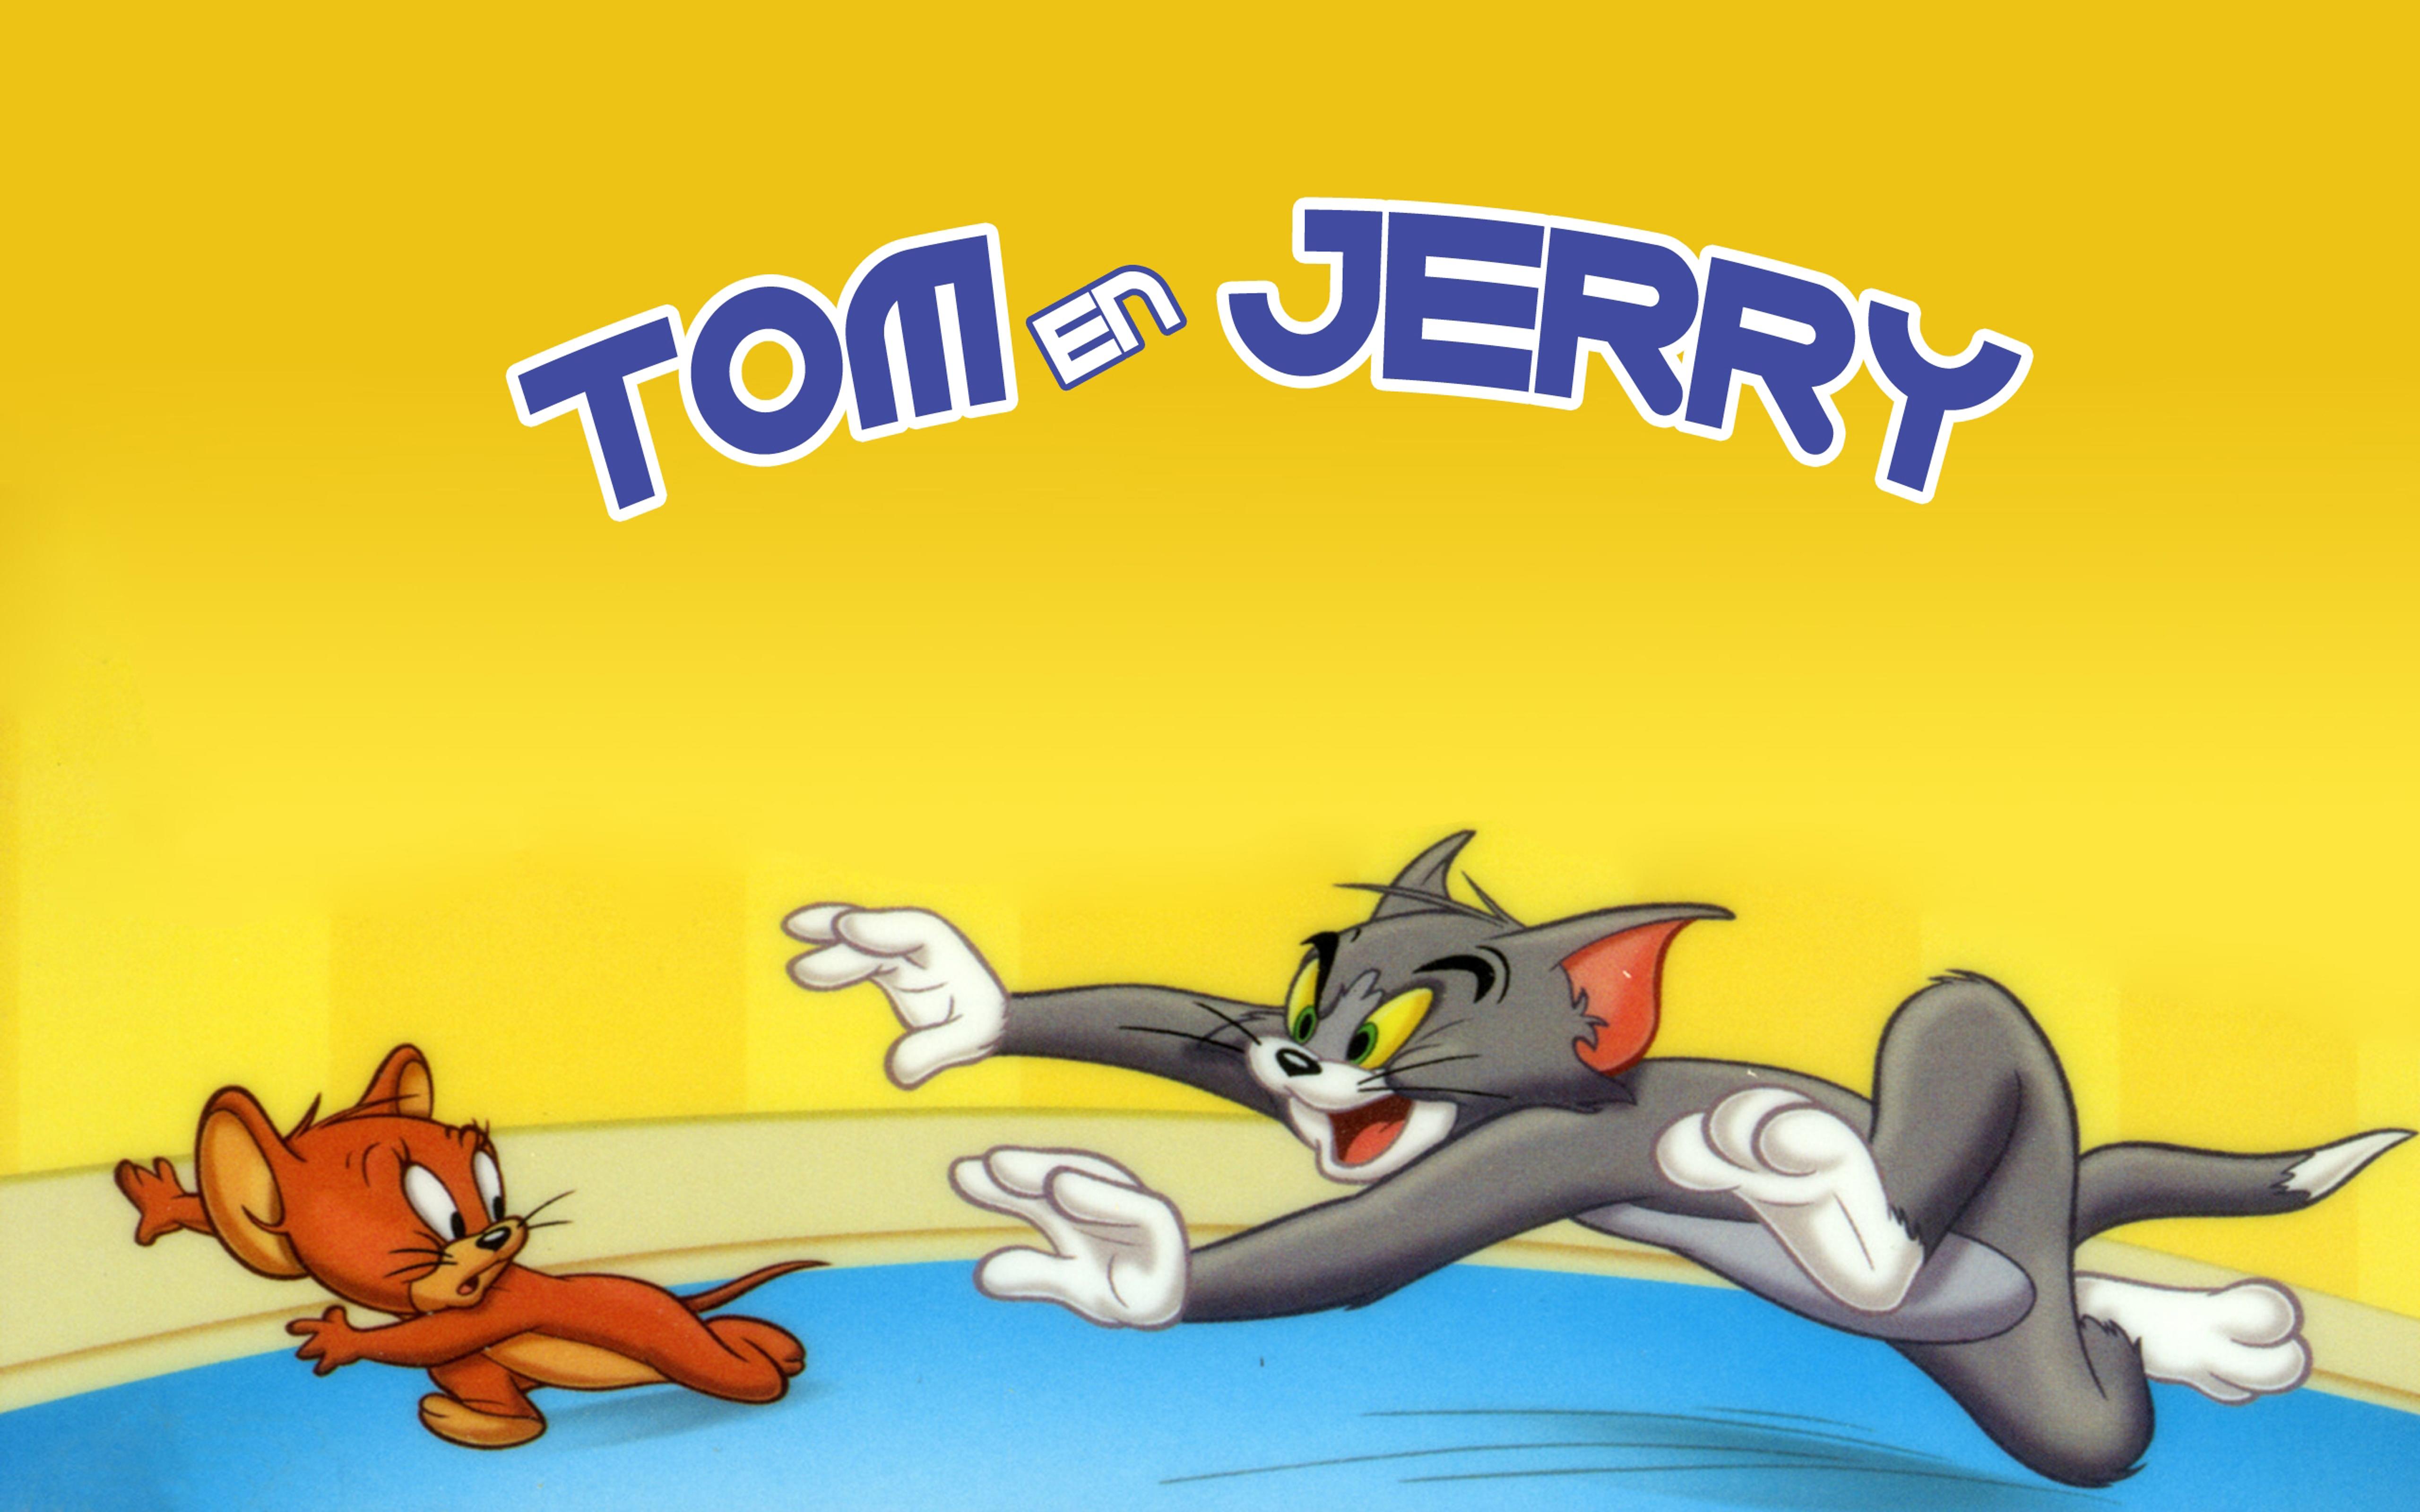 Tom run after jerry - Cartoon HD wallpaper